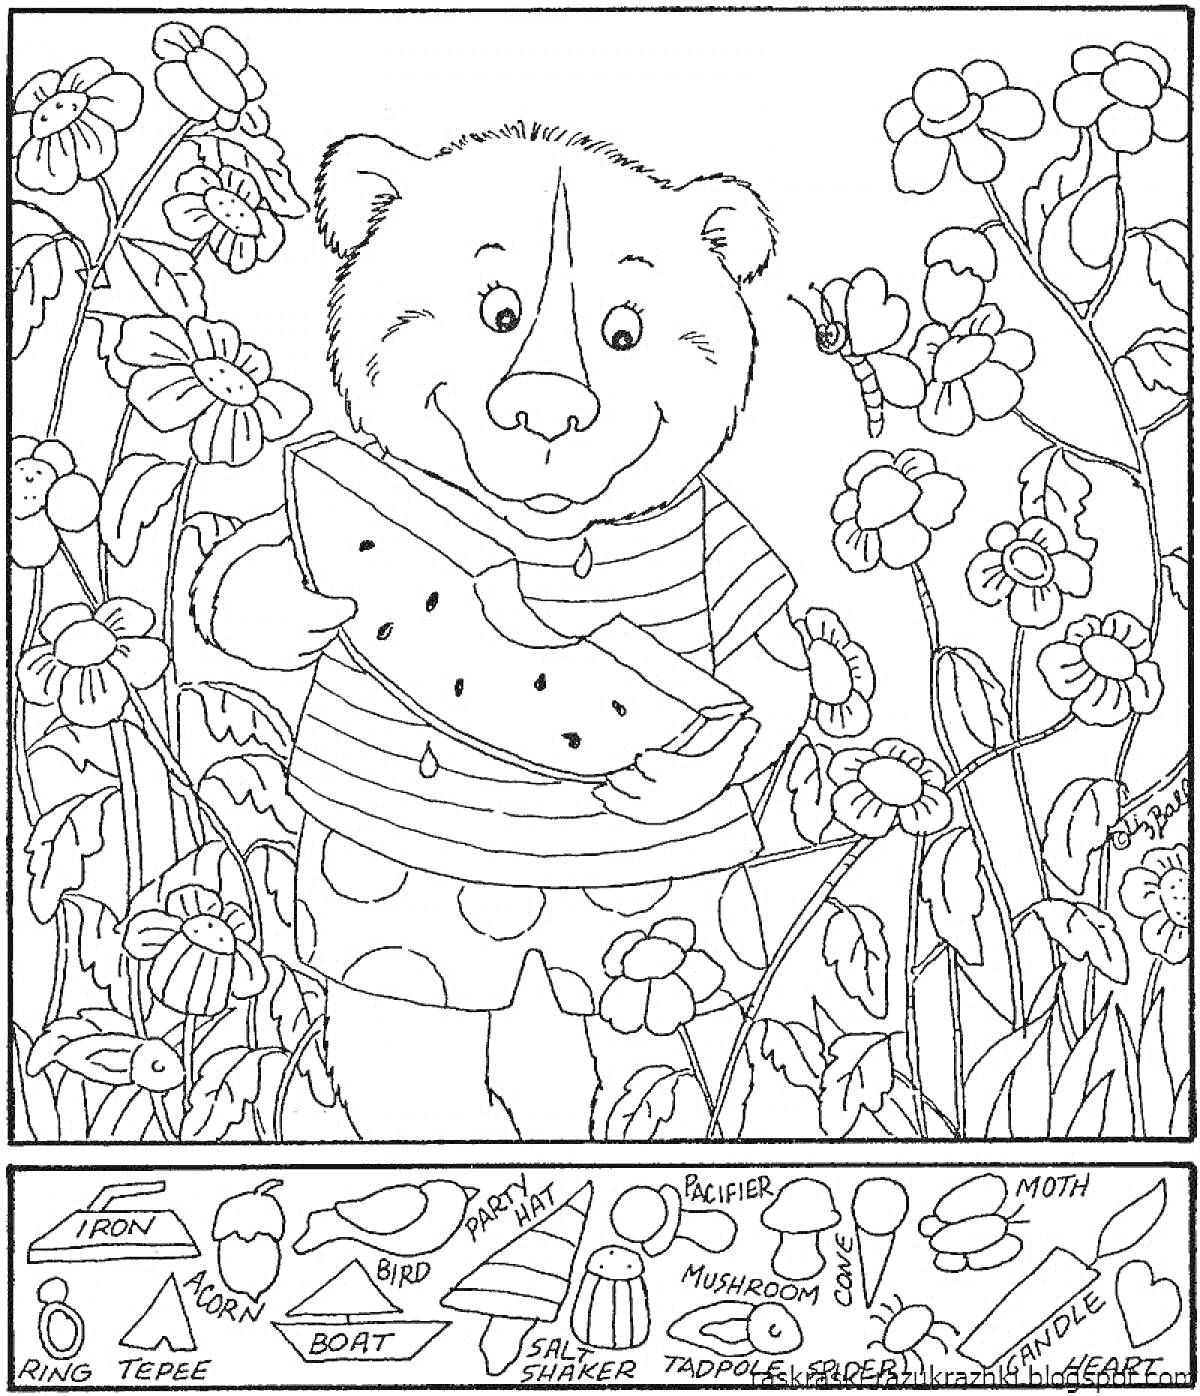 Медвежонок в саду с арбузом, окружённый цветами и спрятанными предметами (утюг, зубочистка, моль, птица, кольцо, чайник, ножницы, кекс, сердце, гриб, лодка, черепаха, солонка)